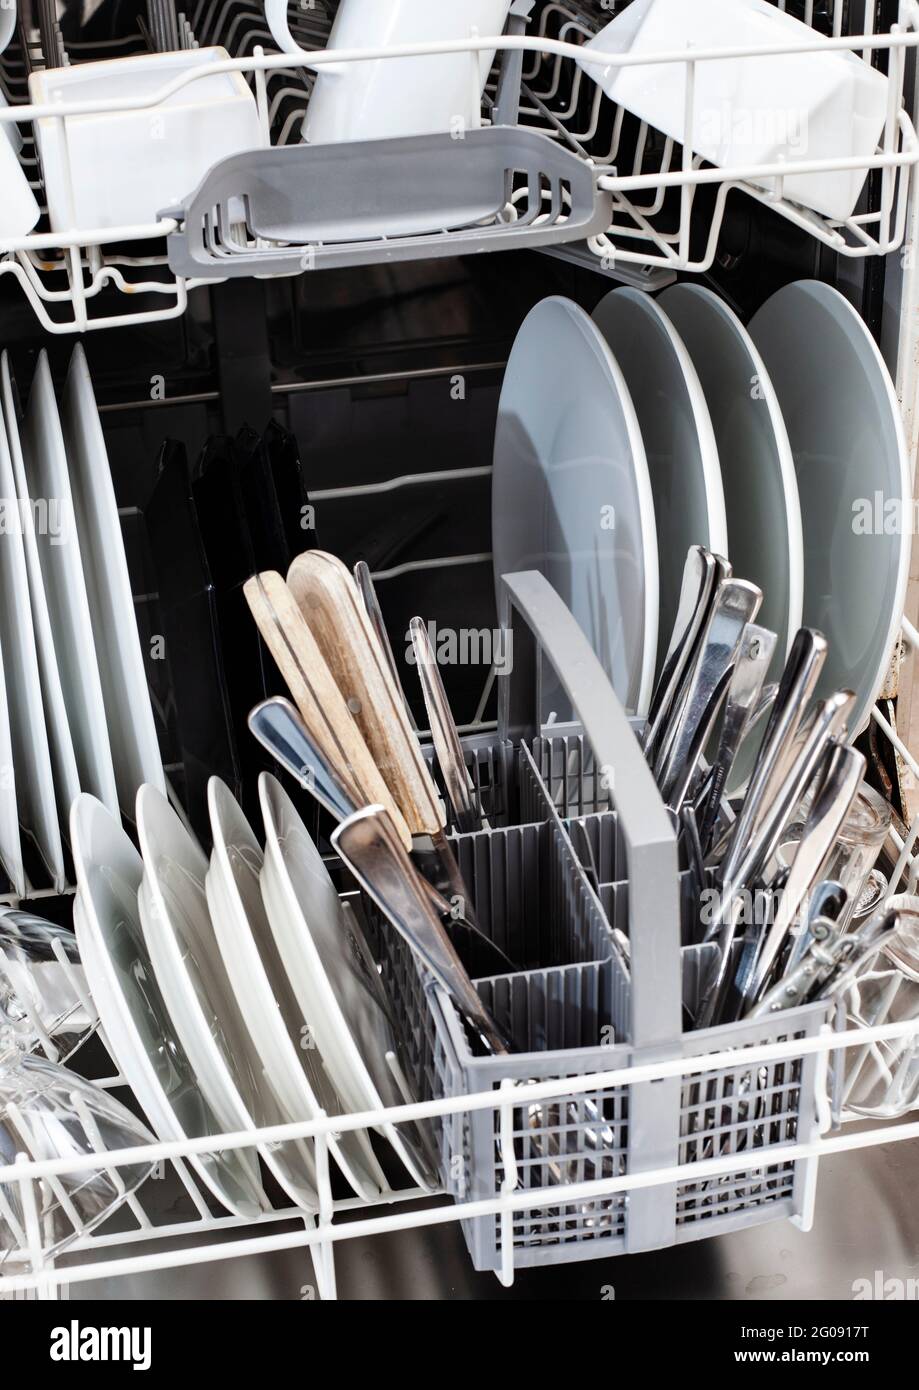 packed dishwasher Stock Photo